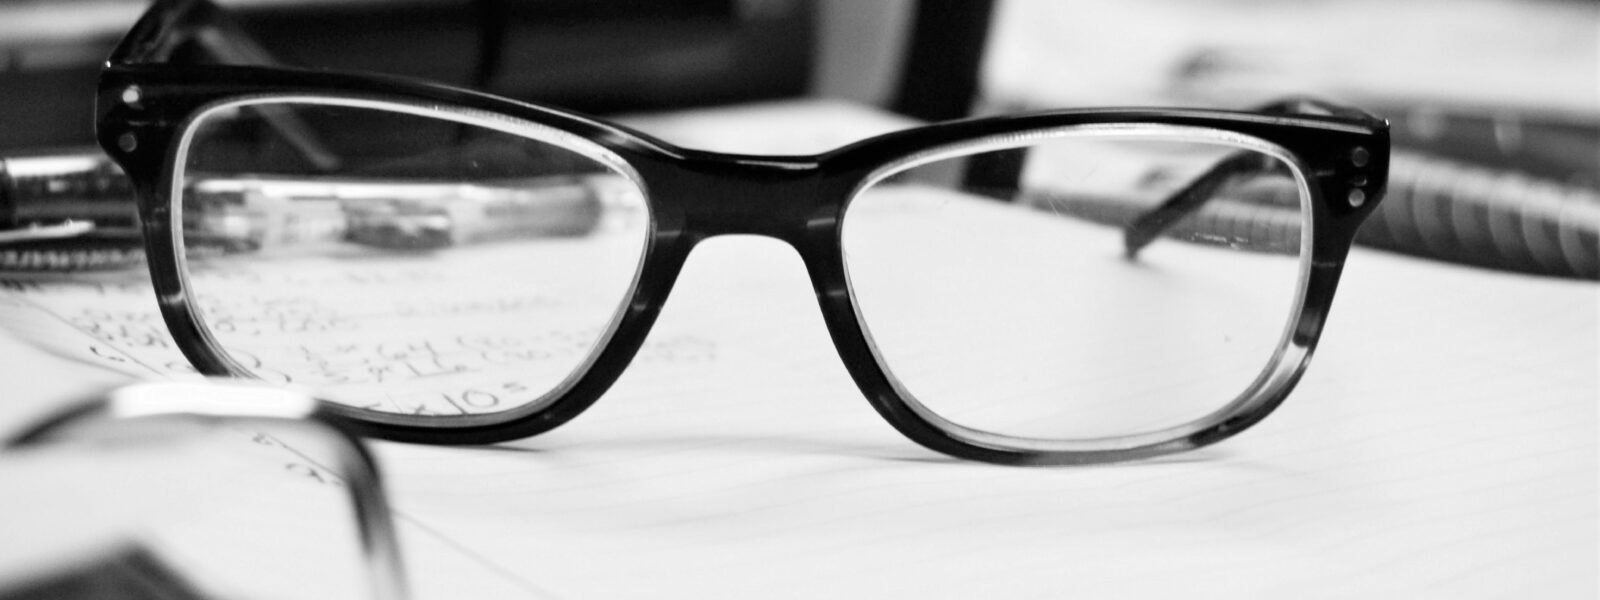 Eine Brille liegt auf einem Buch und zeigt die Sicht eines Menschen mit Hypermetropie